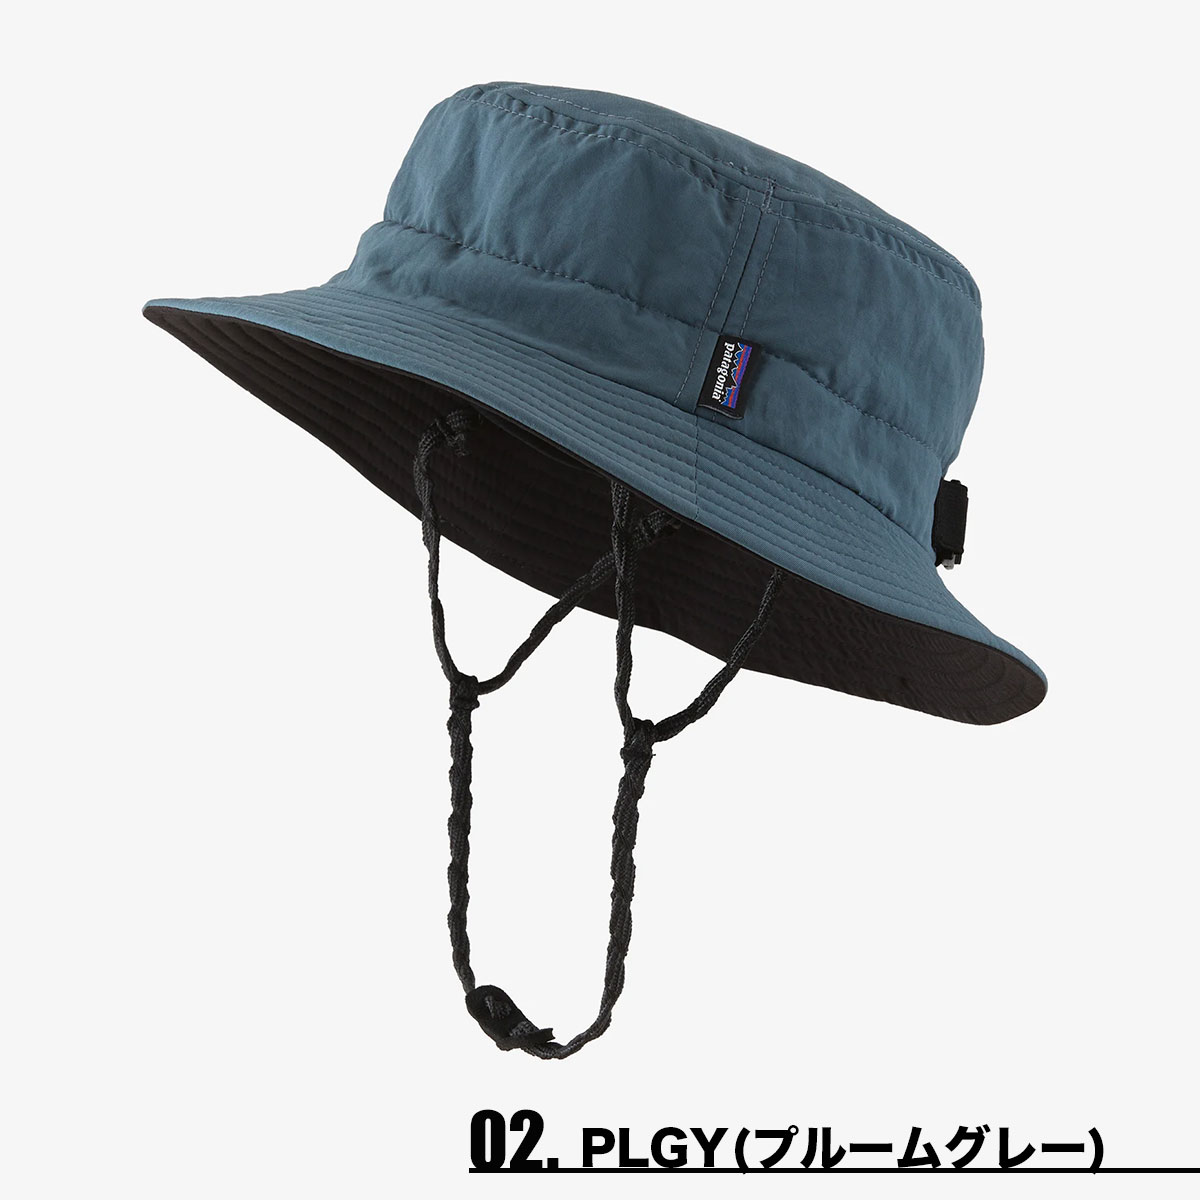 パタゴニア サーフブリム ハット 28832 2020年モデル アウトドア 帽子